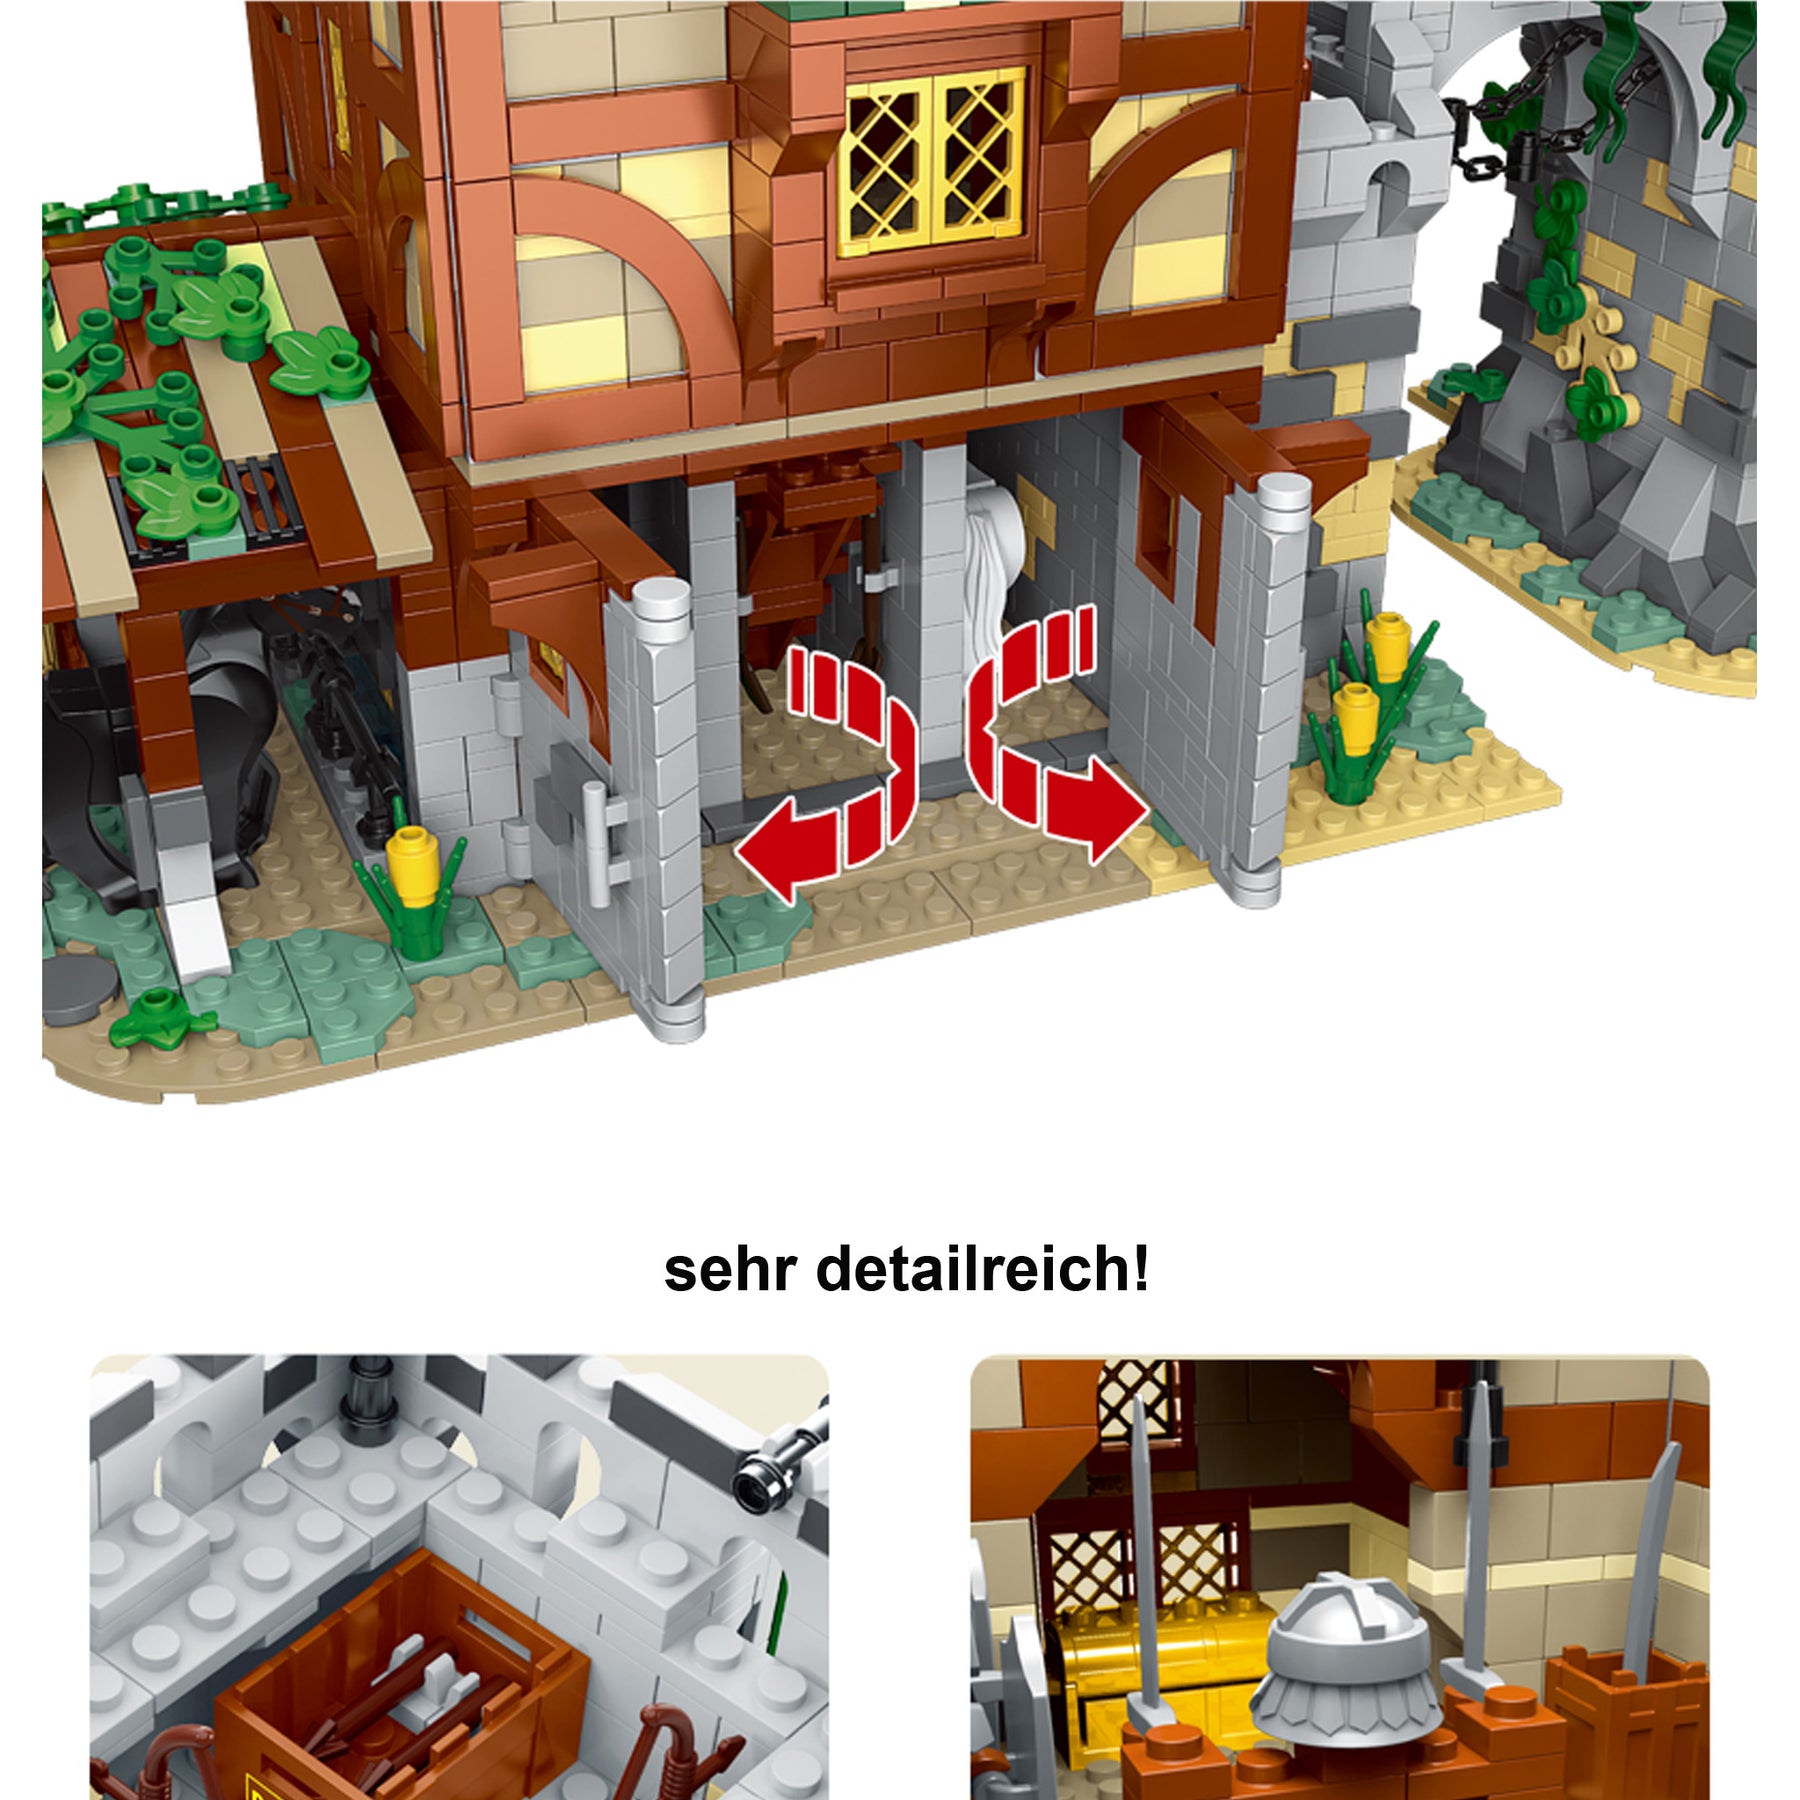 33001 - Mittelalterlicher Wachturm & Stall (Mork)